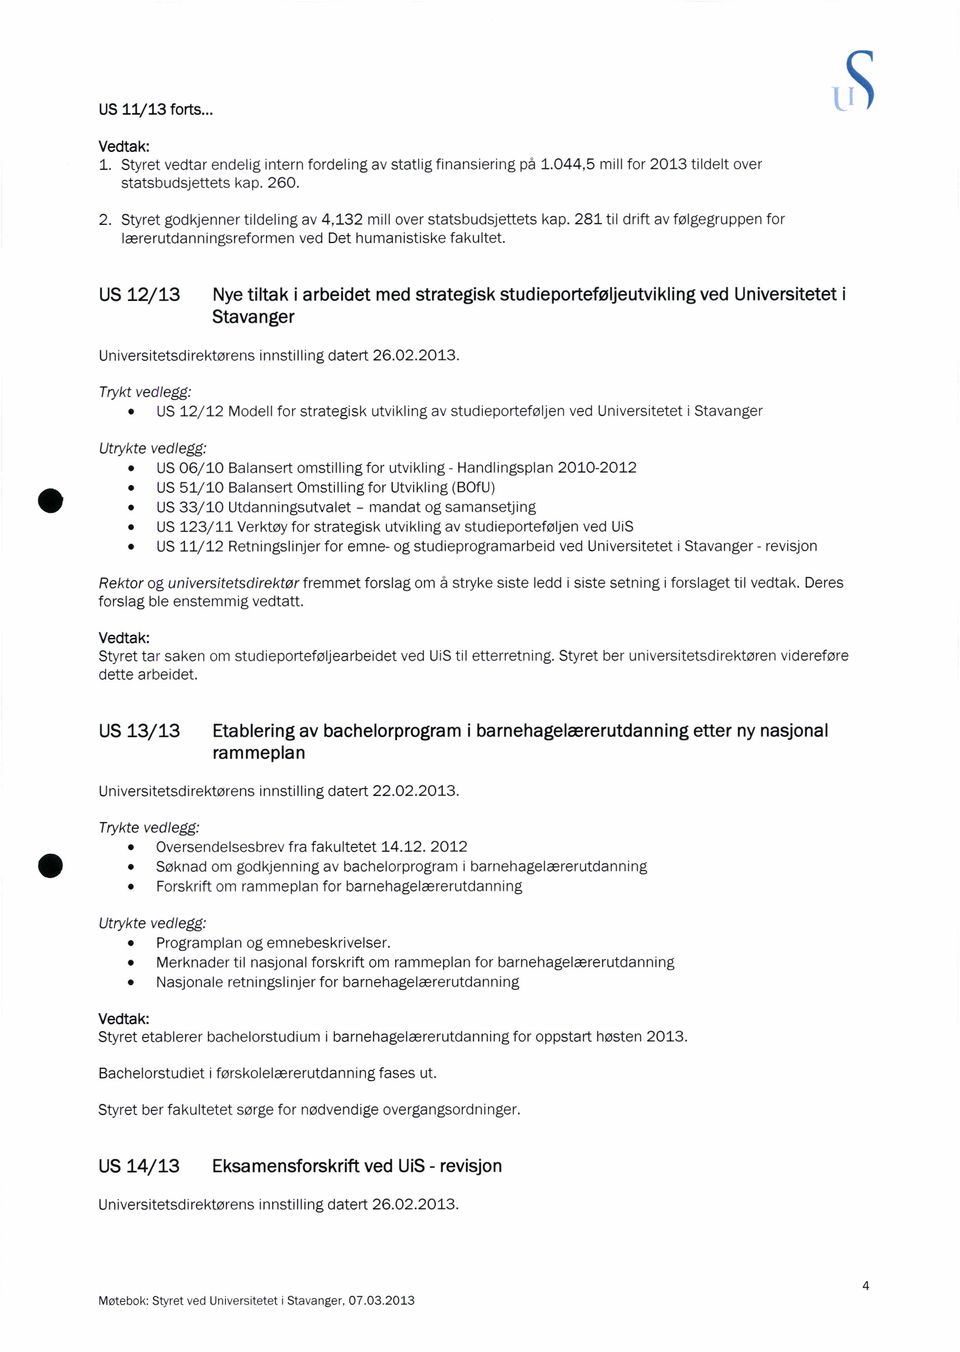 US 12/13 Nye tiltak i arbeidet med strategisk studieporteføljeutvikling ved Universitetet i Stavanger Universitetsdirektørens innstilling datert 26.02.2013.